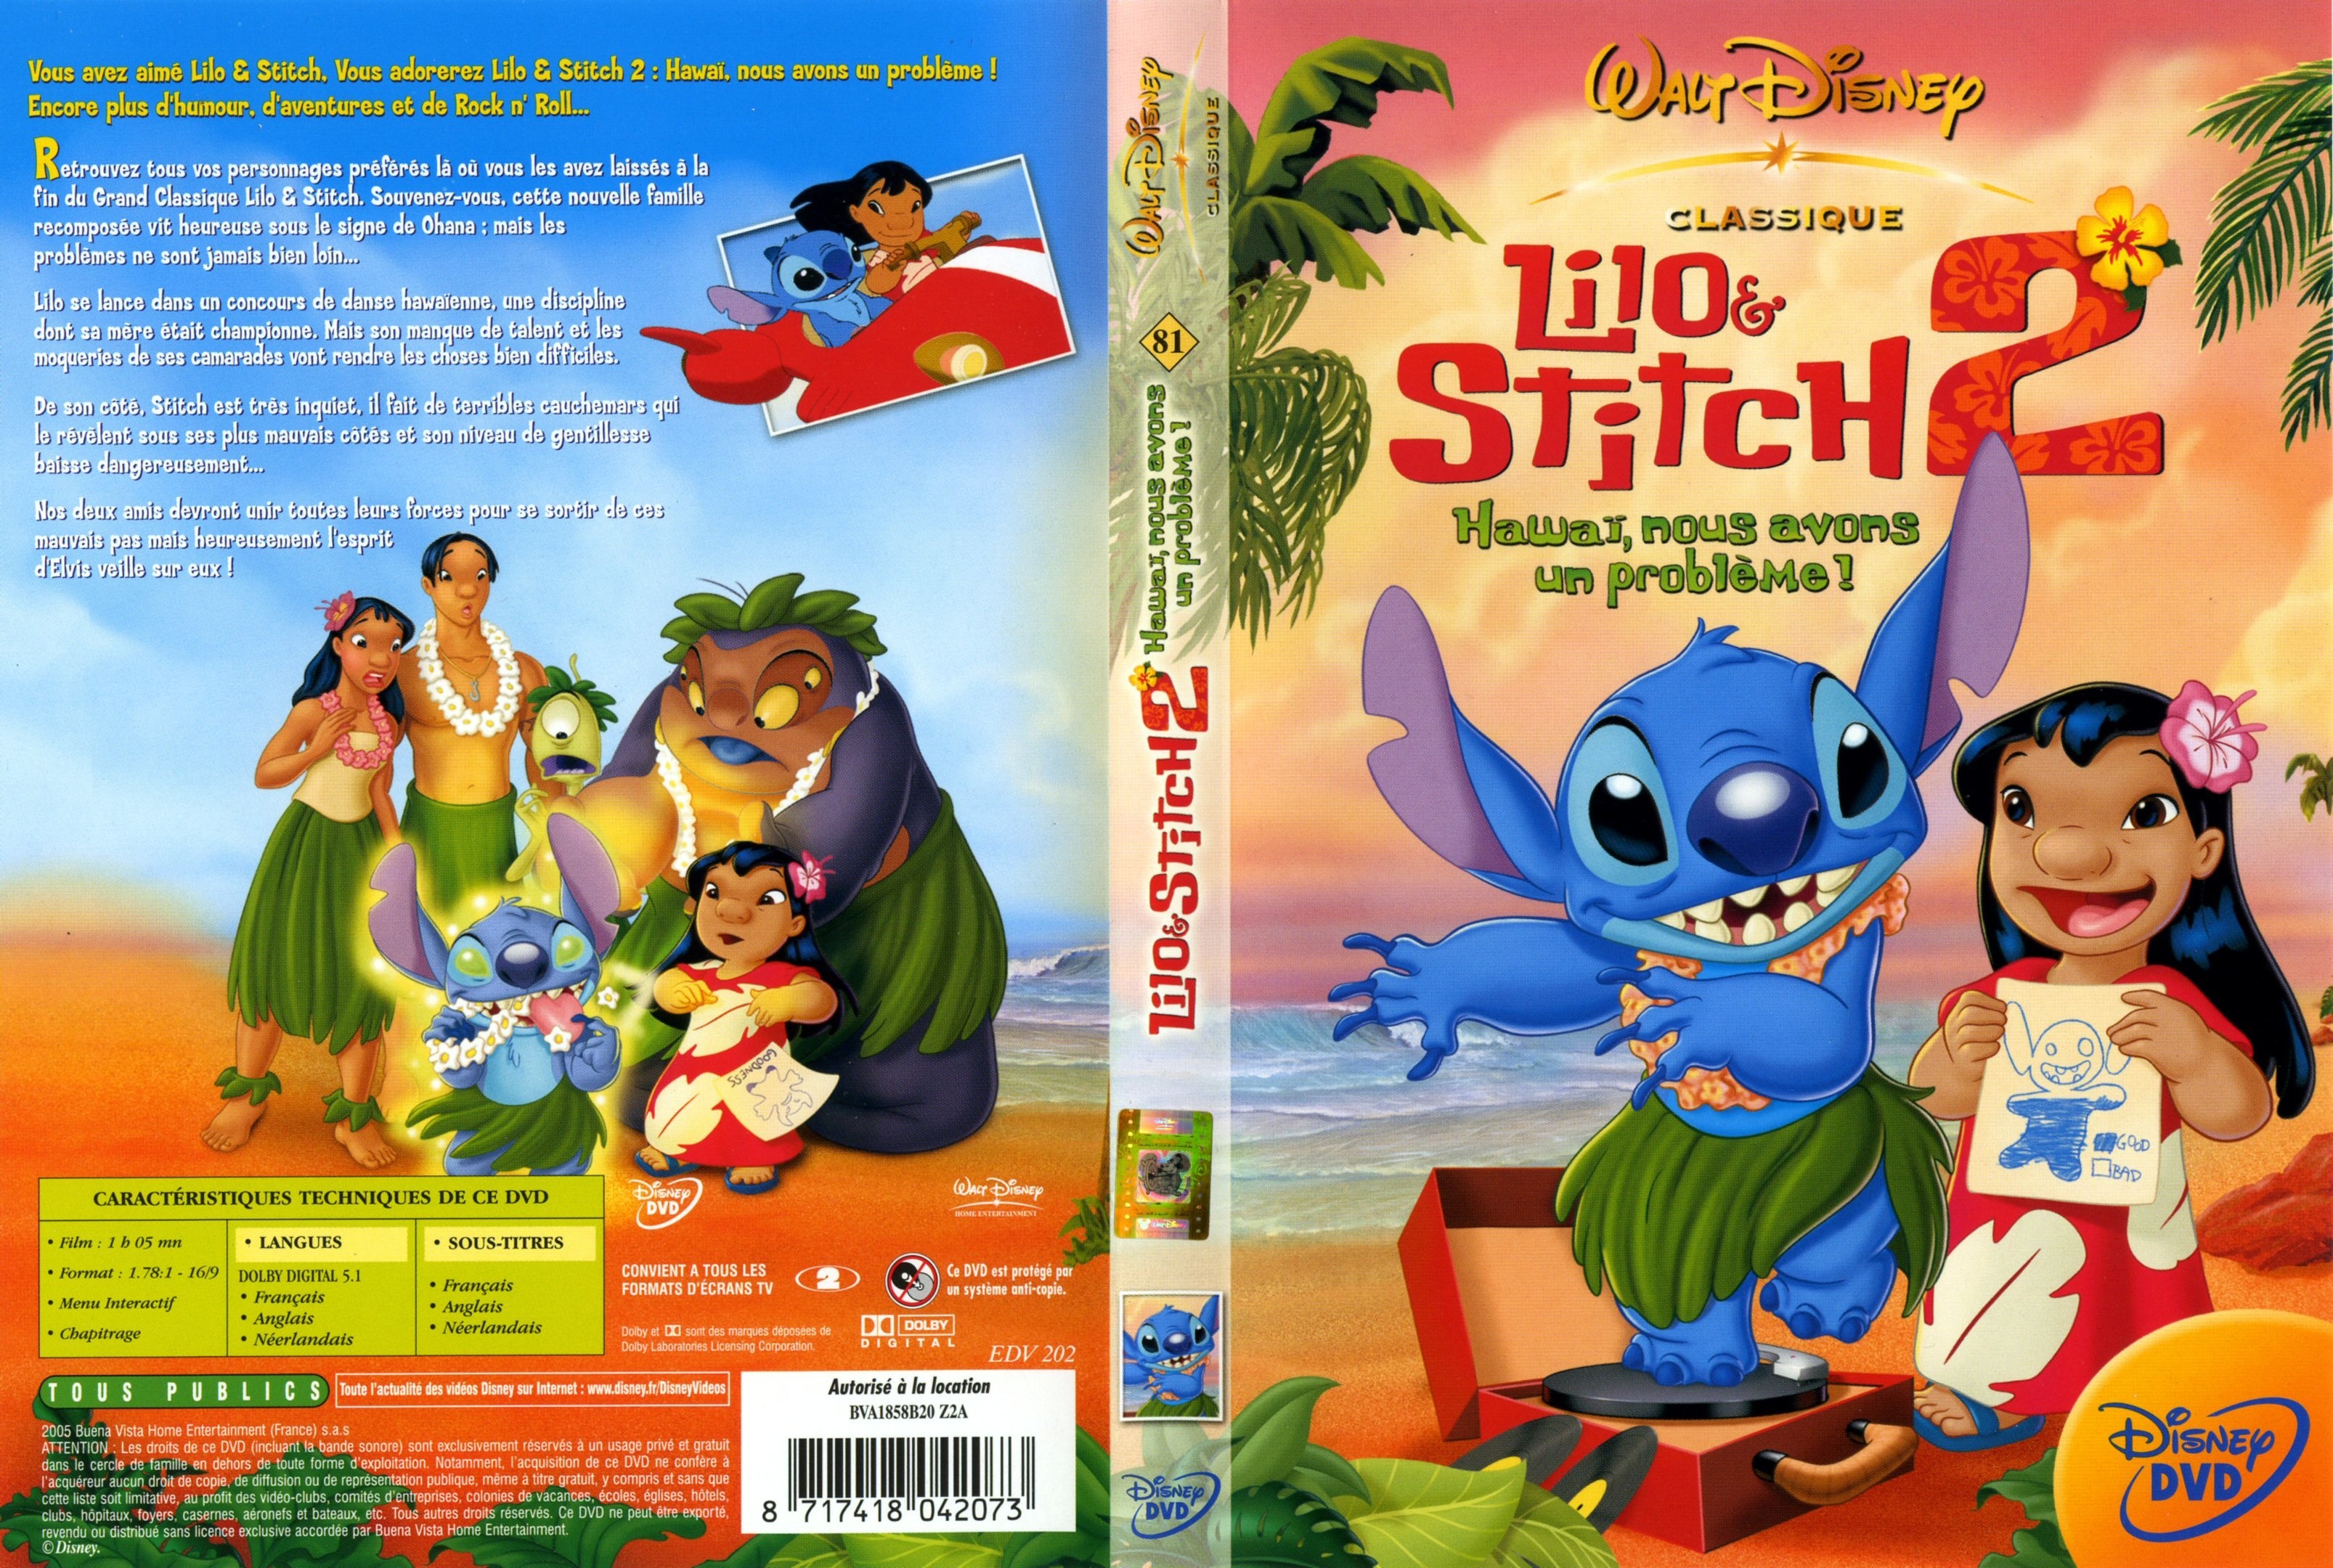 Jaquette DVD Lilo et Stitch 2 v2